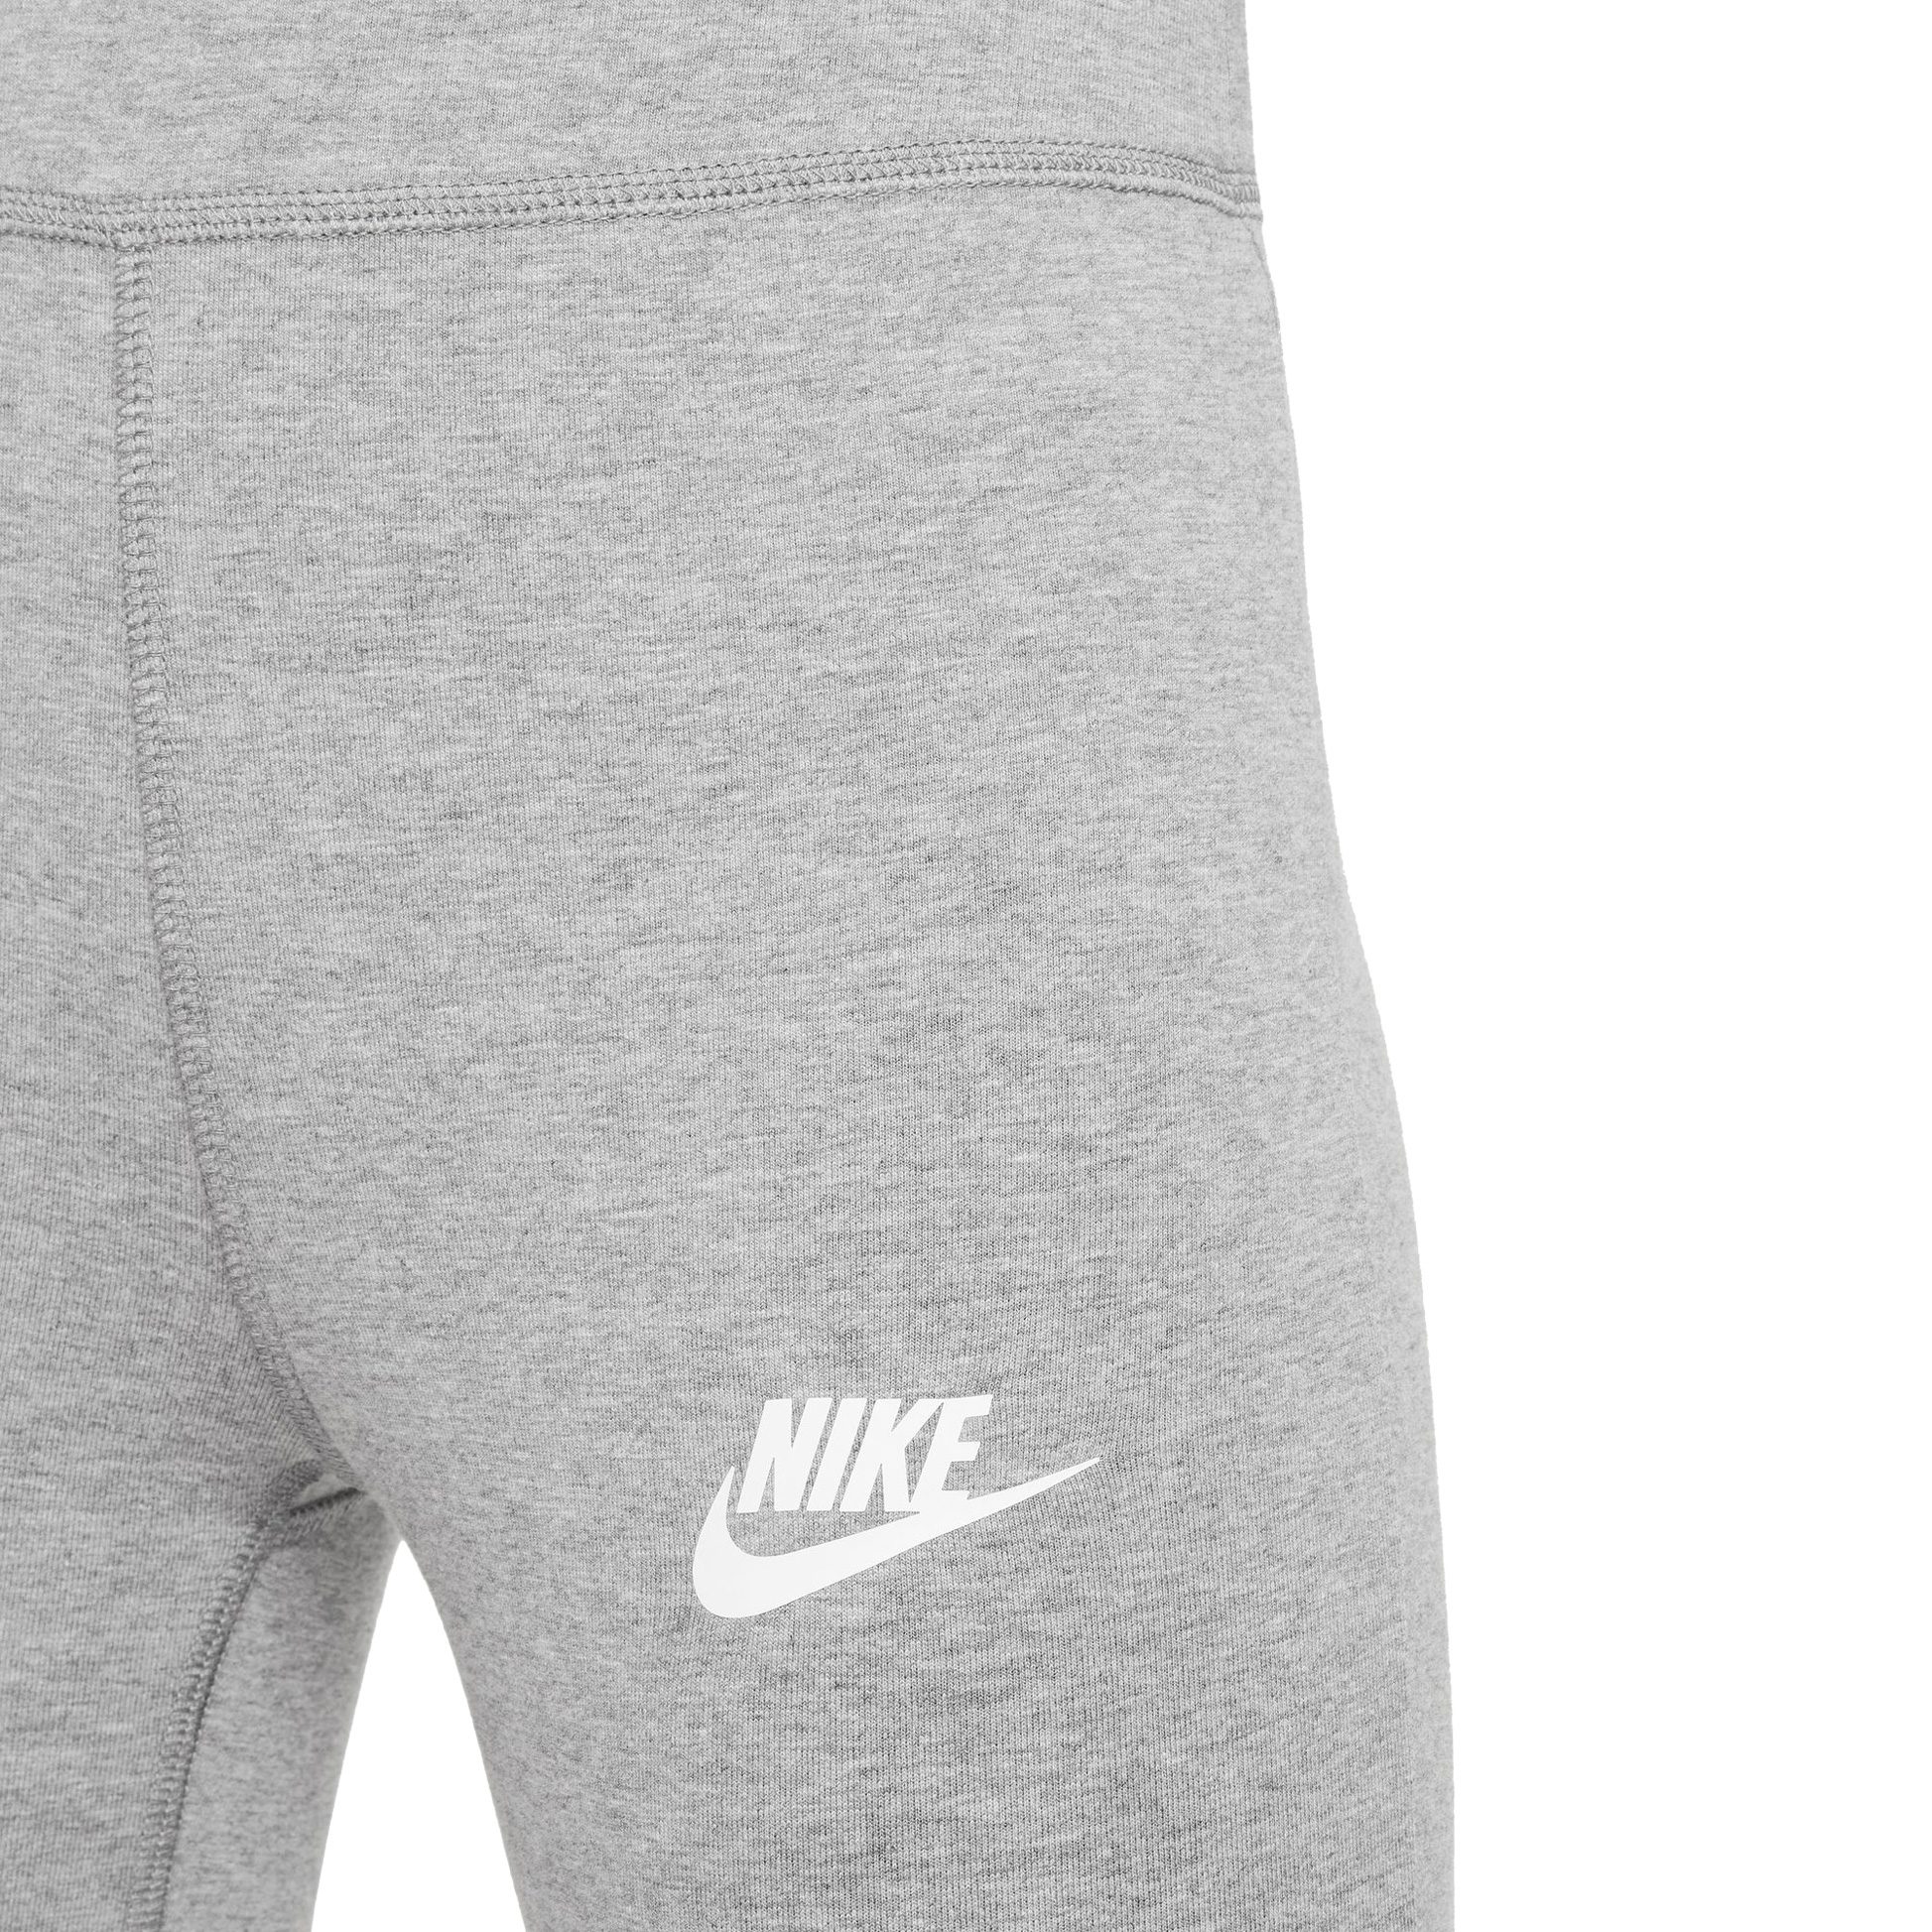 Favorites Sportswear Nike Mädchen heather Leggings kaufen - carbon Shop im Sport Bittl